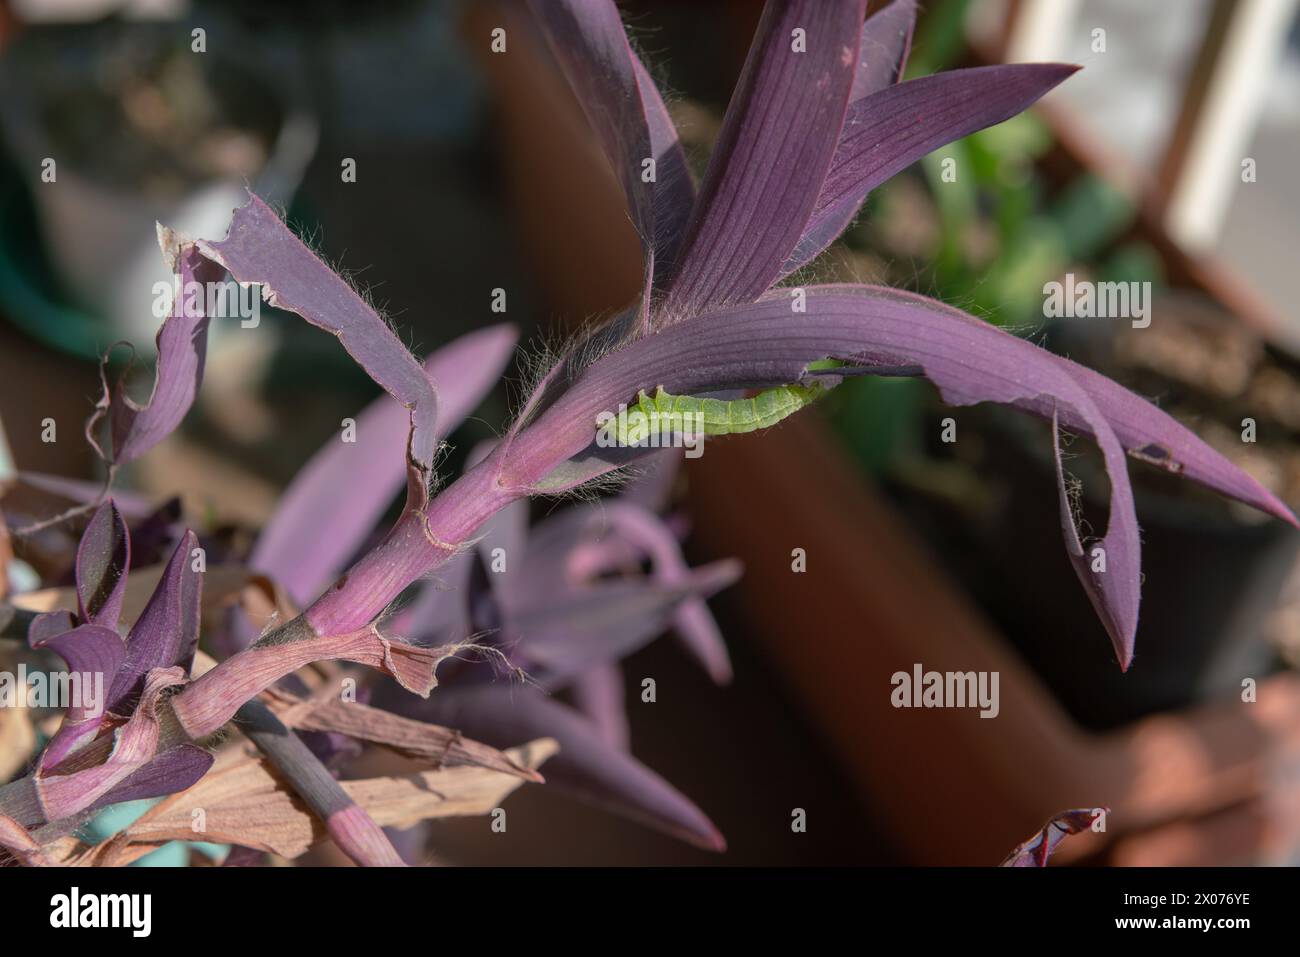 un verme verde chiaramente visibile su foglie rosa scuro o viola, si nutre di una pianta, strizzando le sue foglie prima di trasformarsi in una farfalla e volare Foto Stock